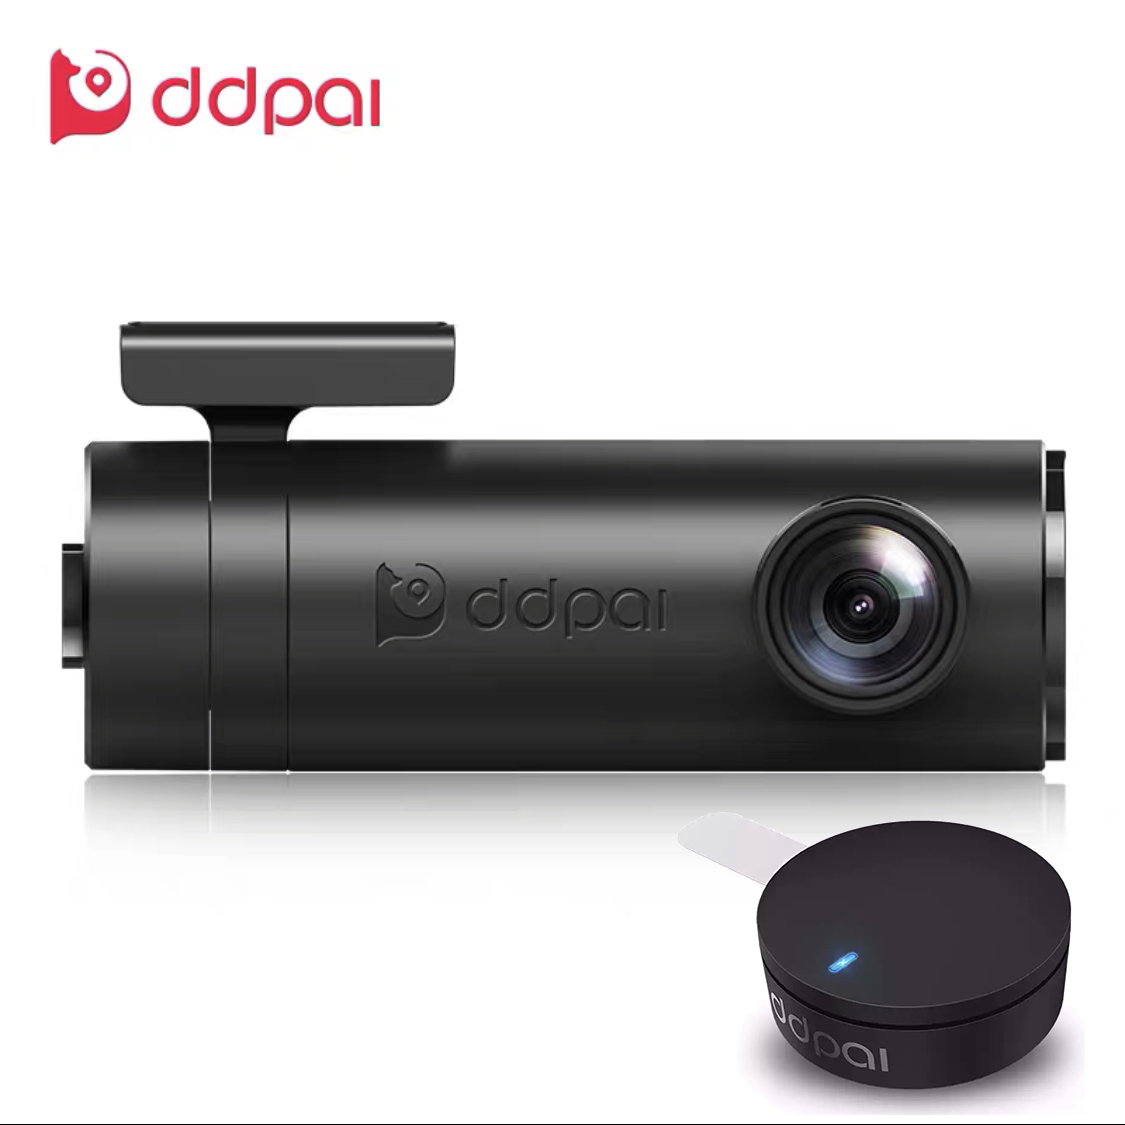 [ประกัน 1 ปี] กล้องติดรถยนต์ DDPai Mini มีรีโมท Dash Cam 1080 มุมมองภาพ140องศา  G-Sensor บันทึกและจัดเก็บวิดีโอโดยอัตโนมัติ WDR